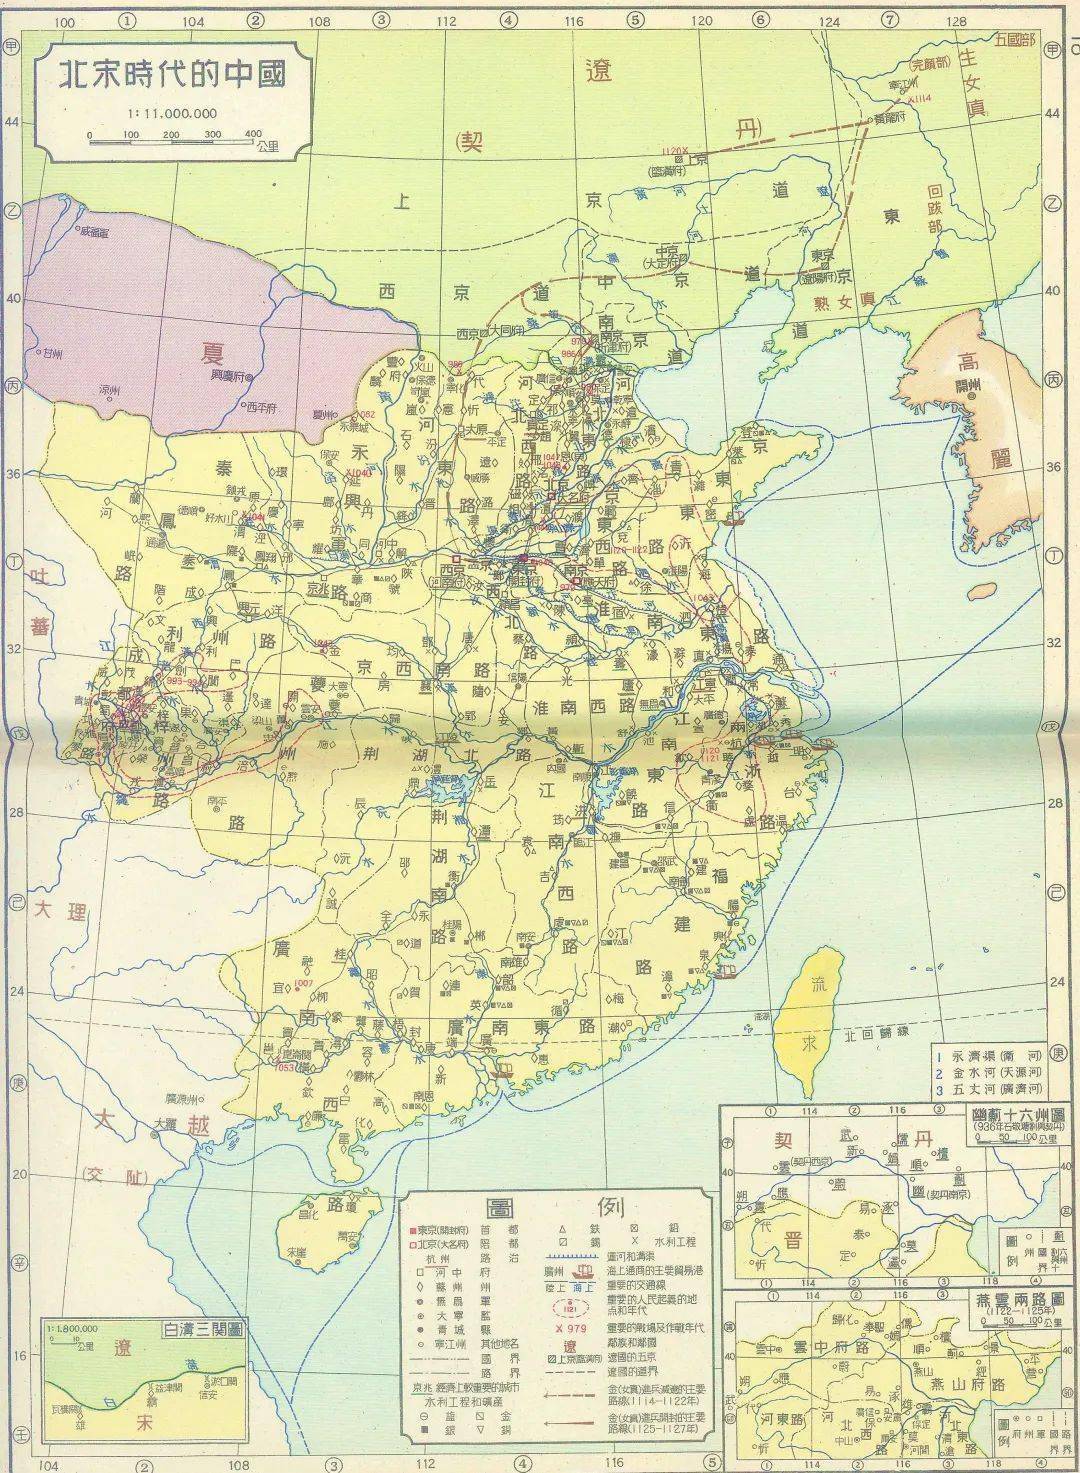 1955年出版的中国历史地图看看和当今流行的版本有什么区别